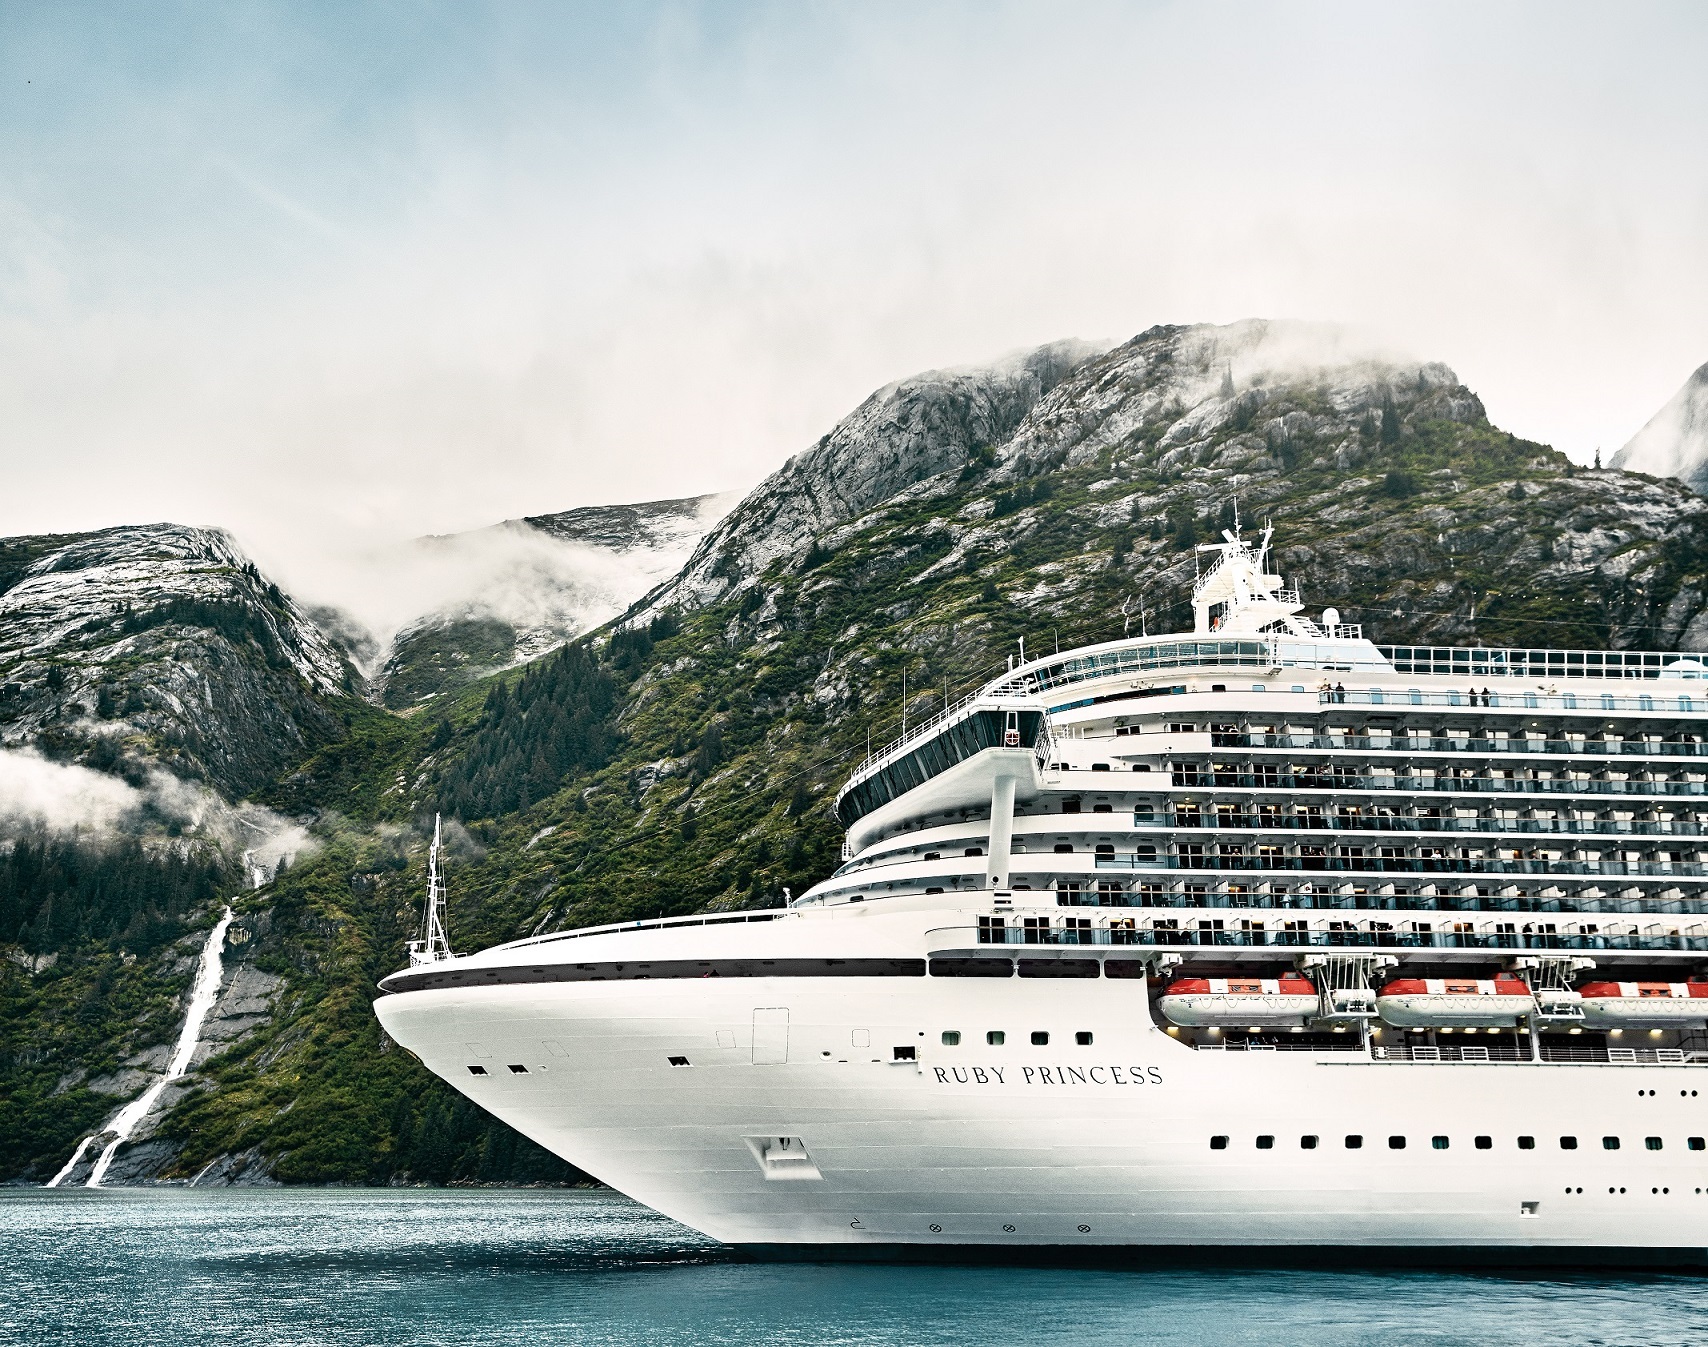 “全球旅行大师”公主邮轮今年主推备受赞誉的阿拉斯加航线